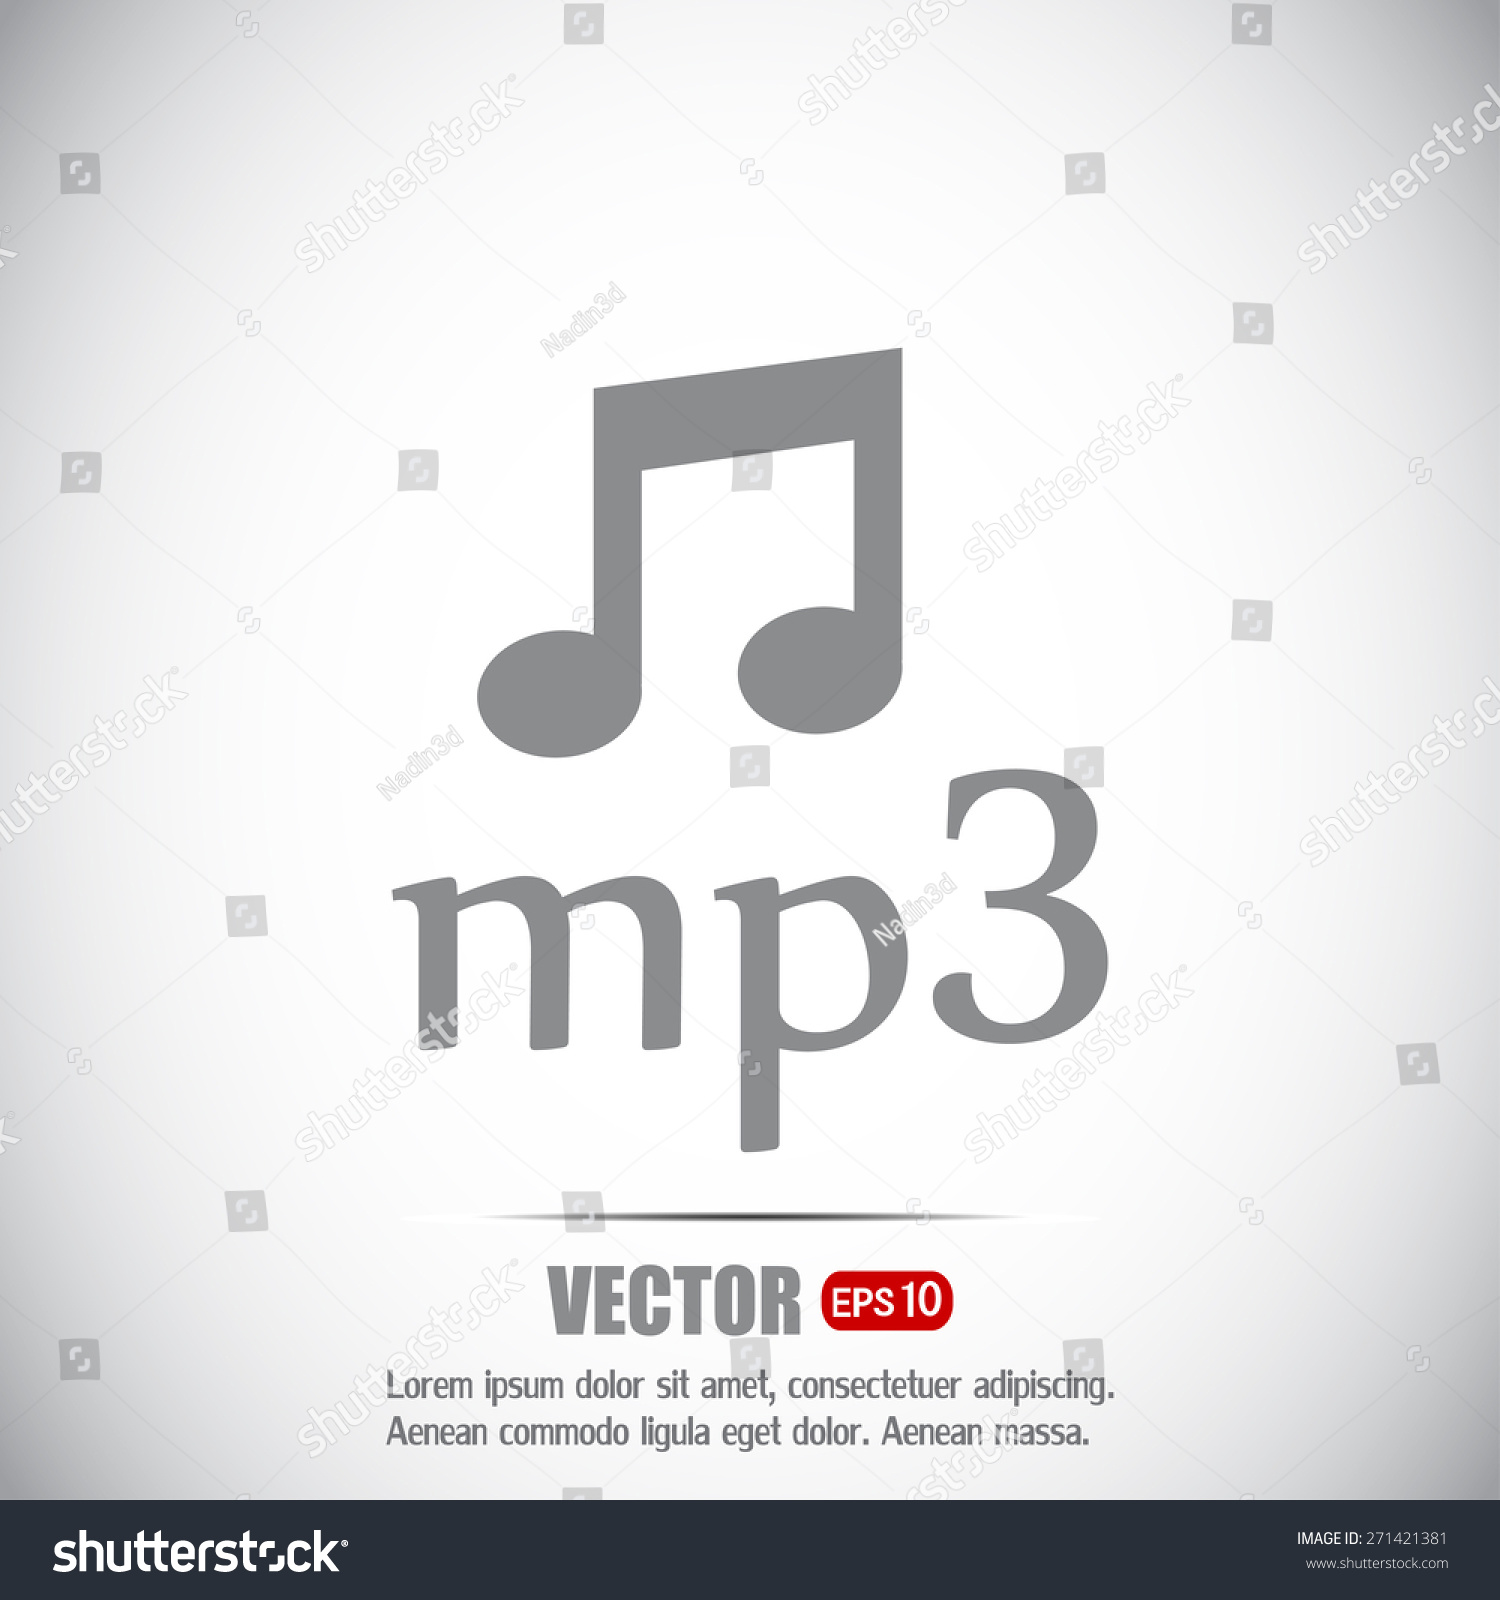  Vector icon download mp3 file  #271421381